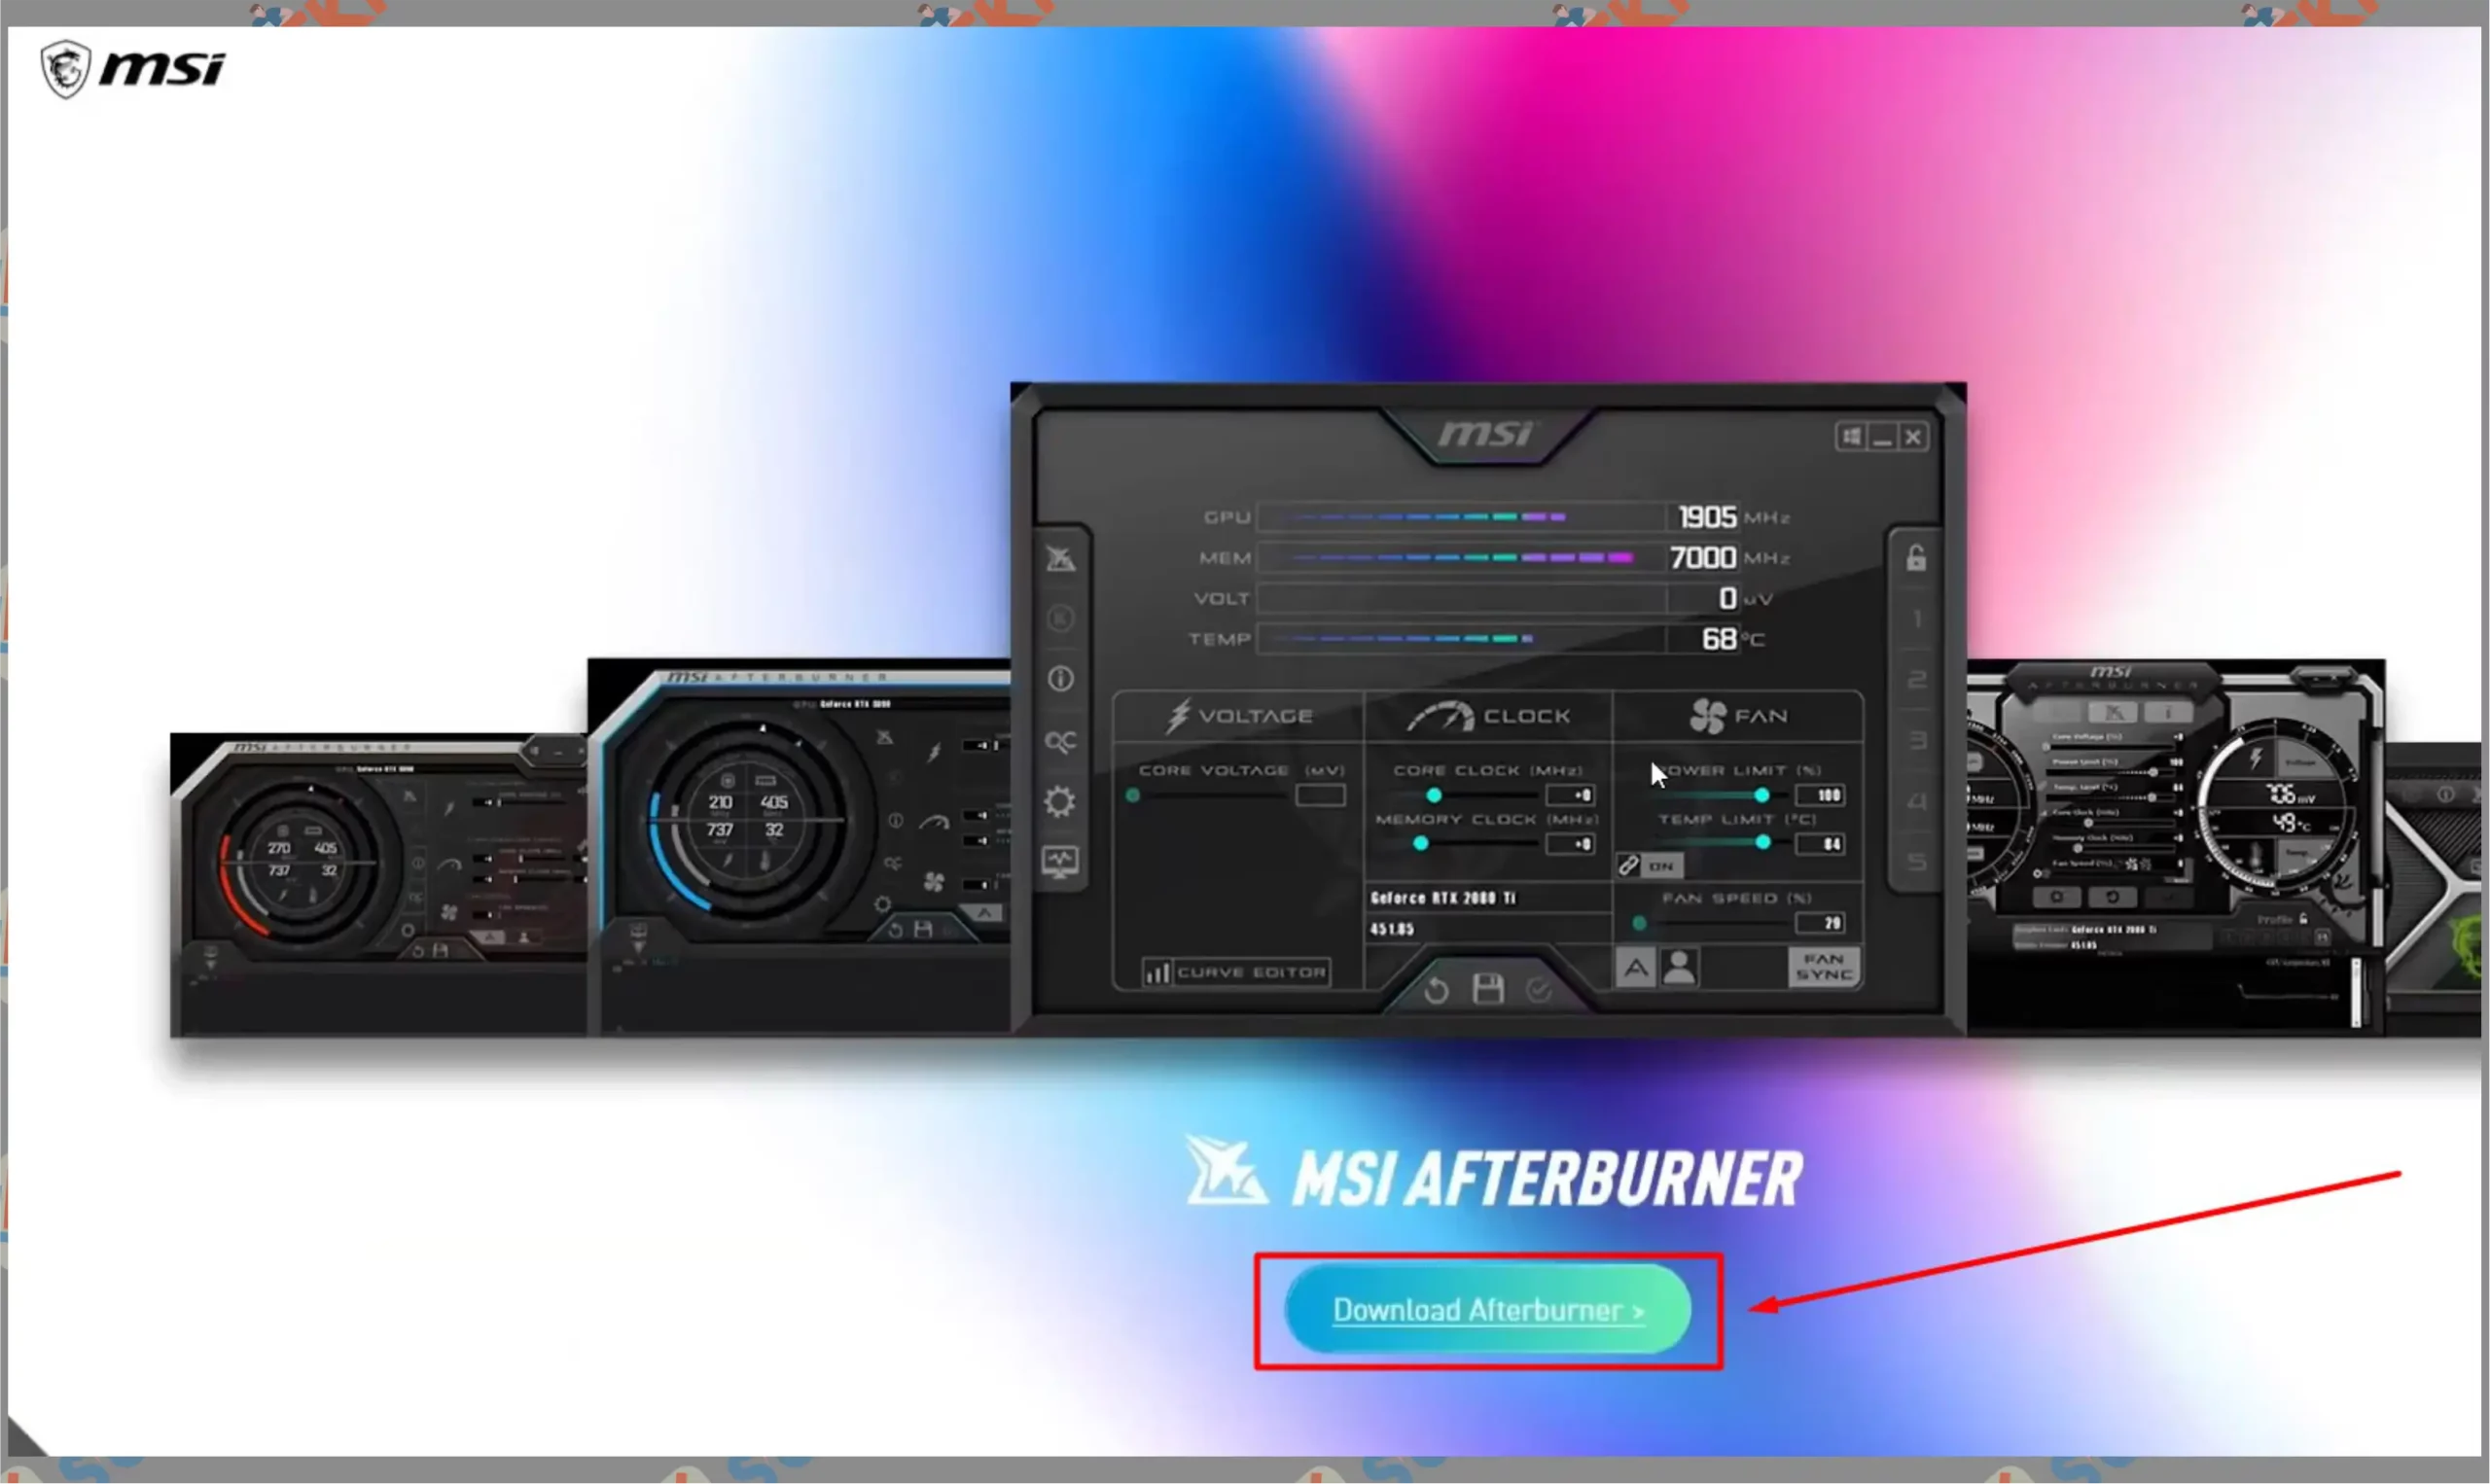 1 Ketk Download Afterburner - Cara Mengubah Kecepatan Fan VGA Nvidia